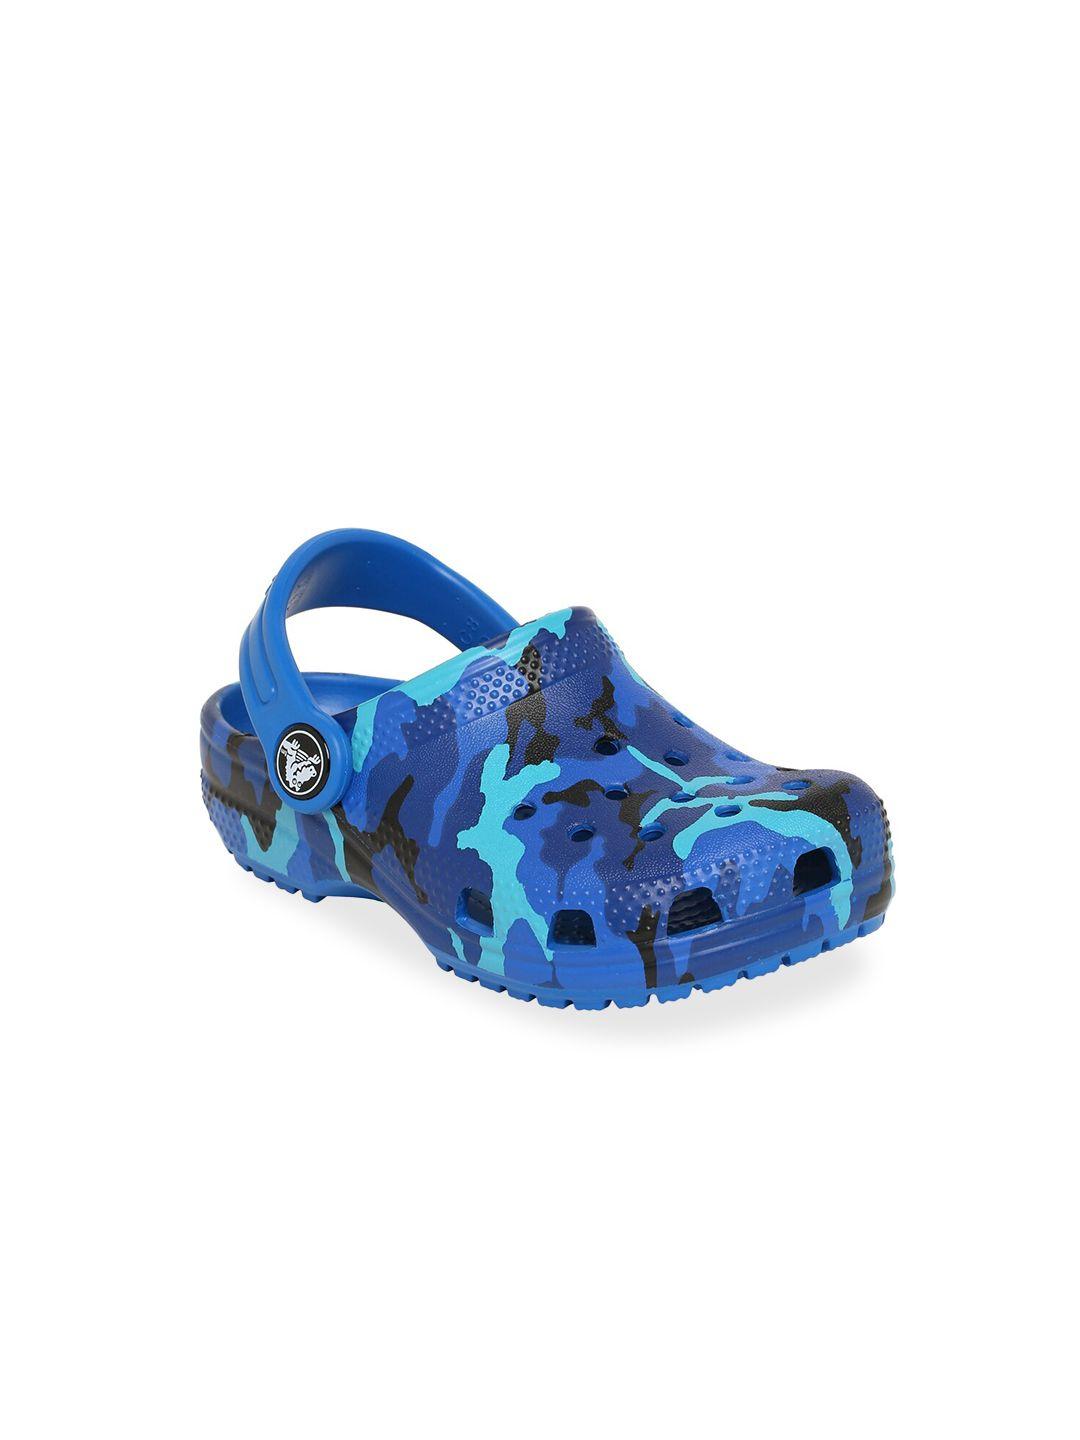 crocs-unisex-kids-blue-&-black-camouflage-classic-clogs